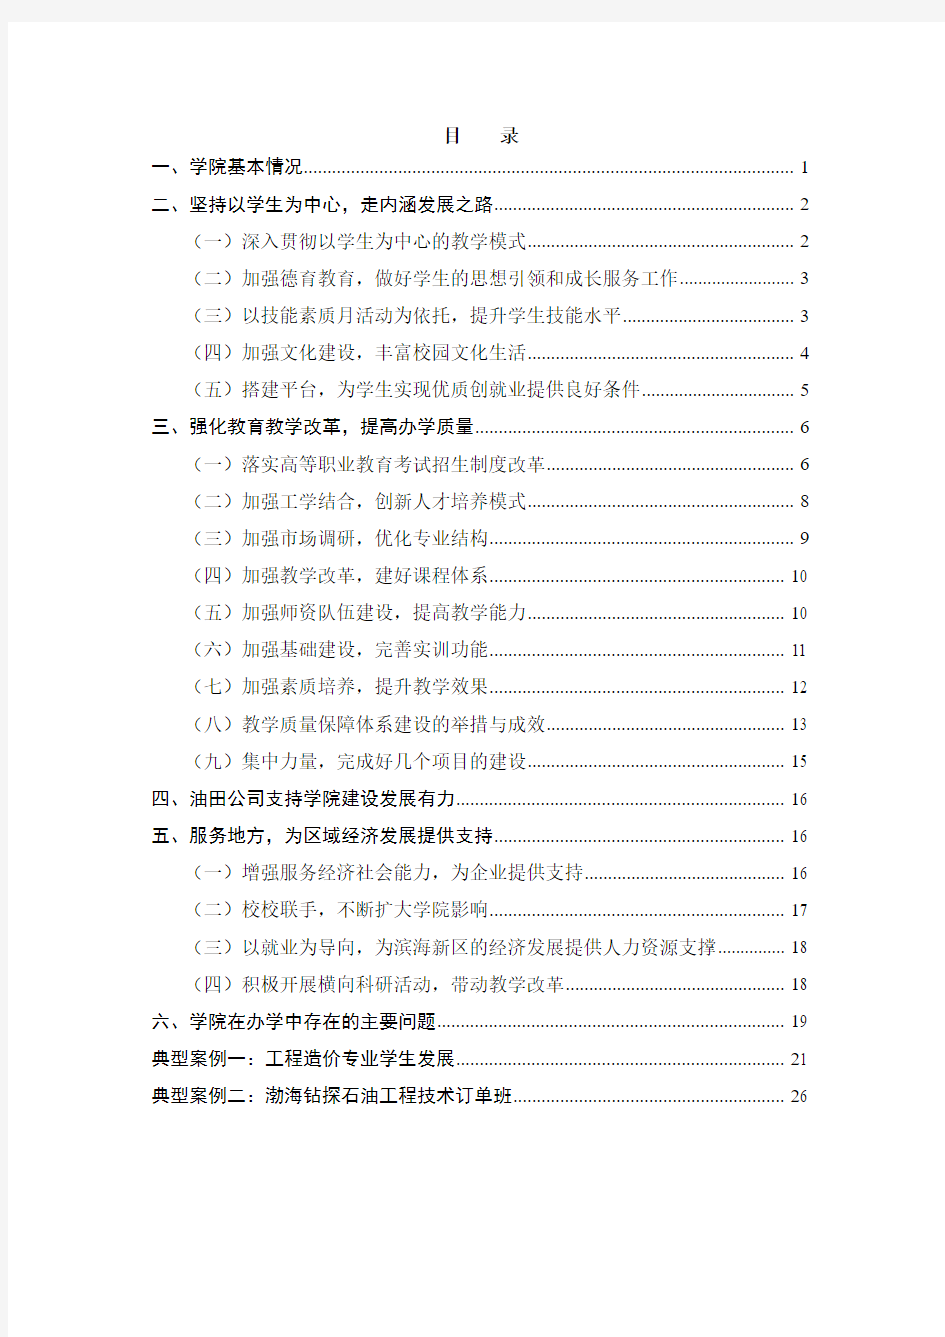 天津工程职业技术学院高等职业教育人才培养质量年度报告(2014)